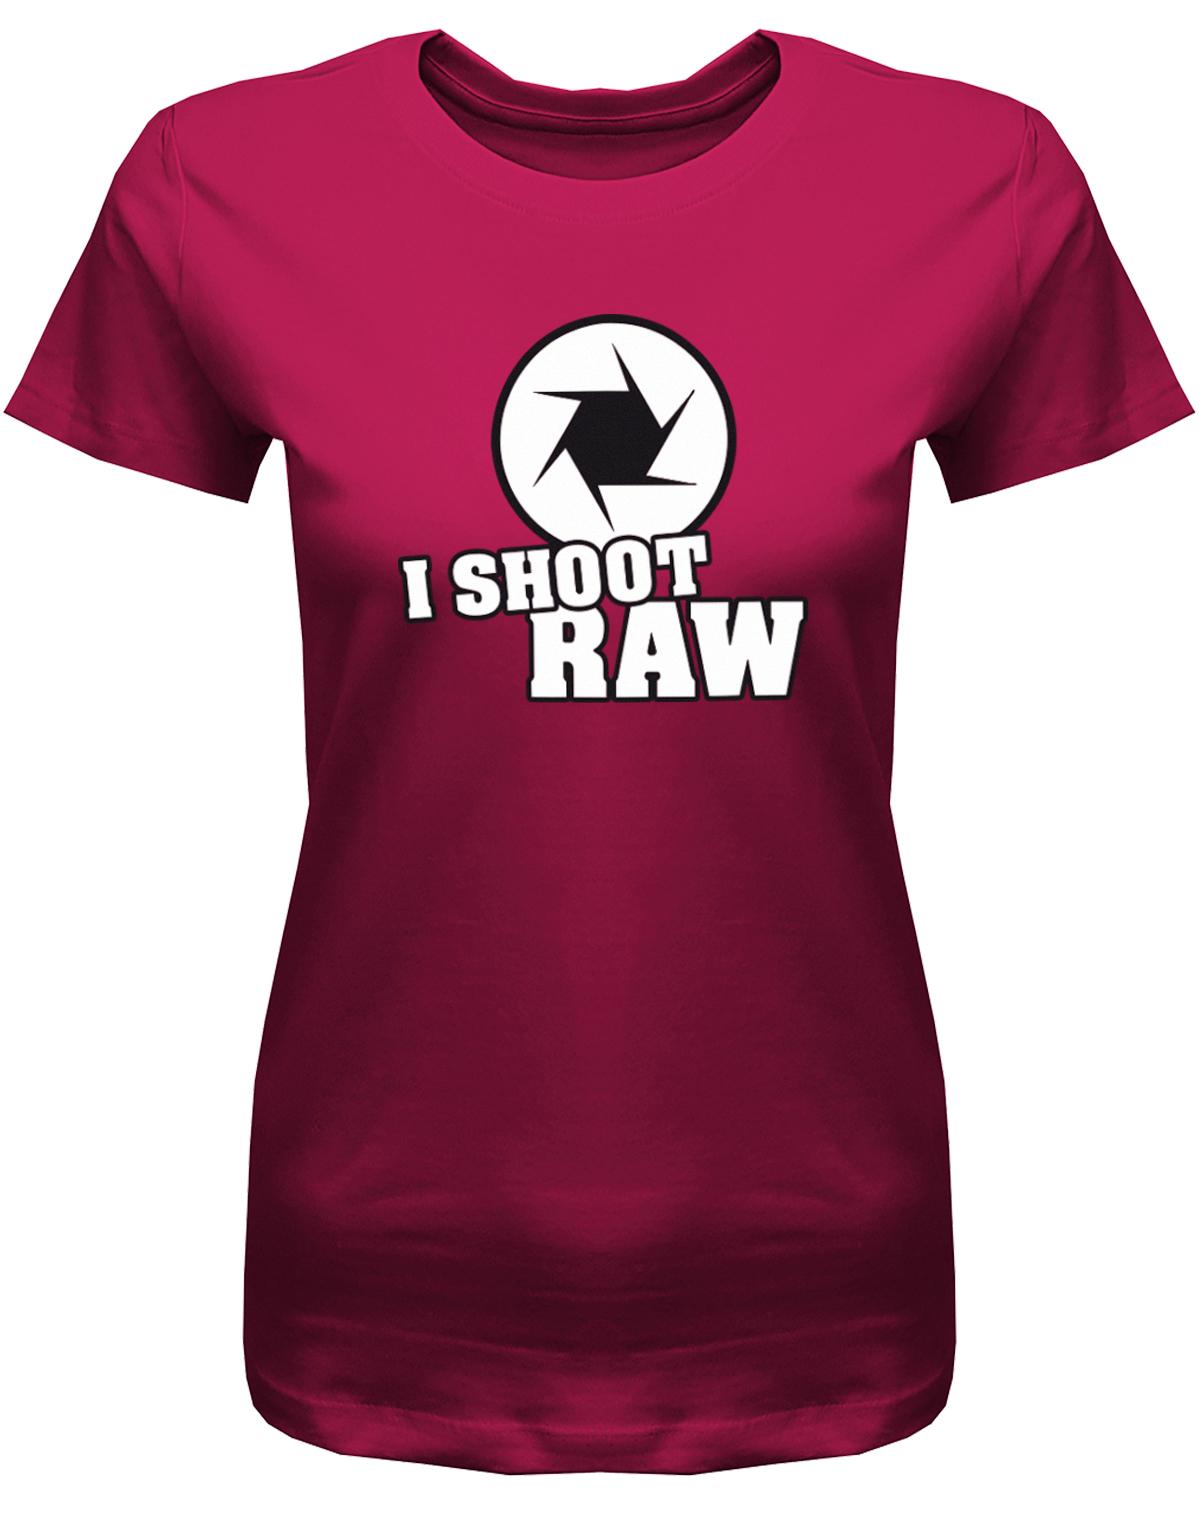 I-Shoot-Raw-Damen-Shirt-Sorbet